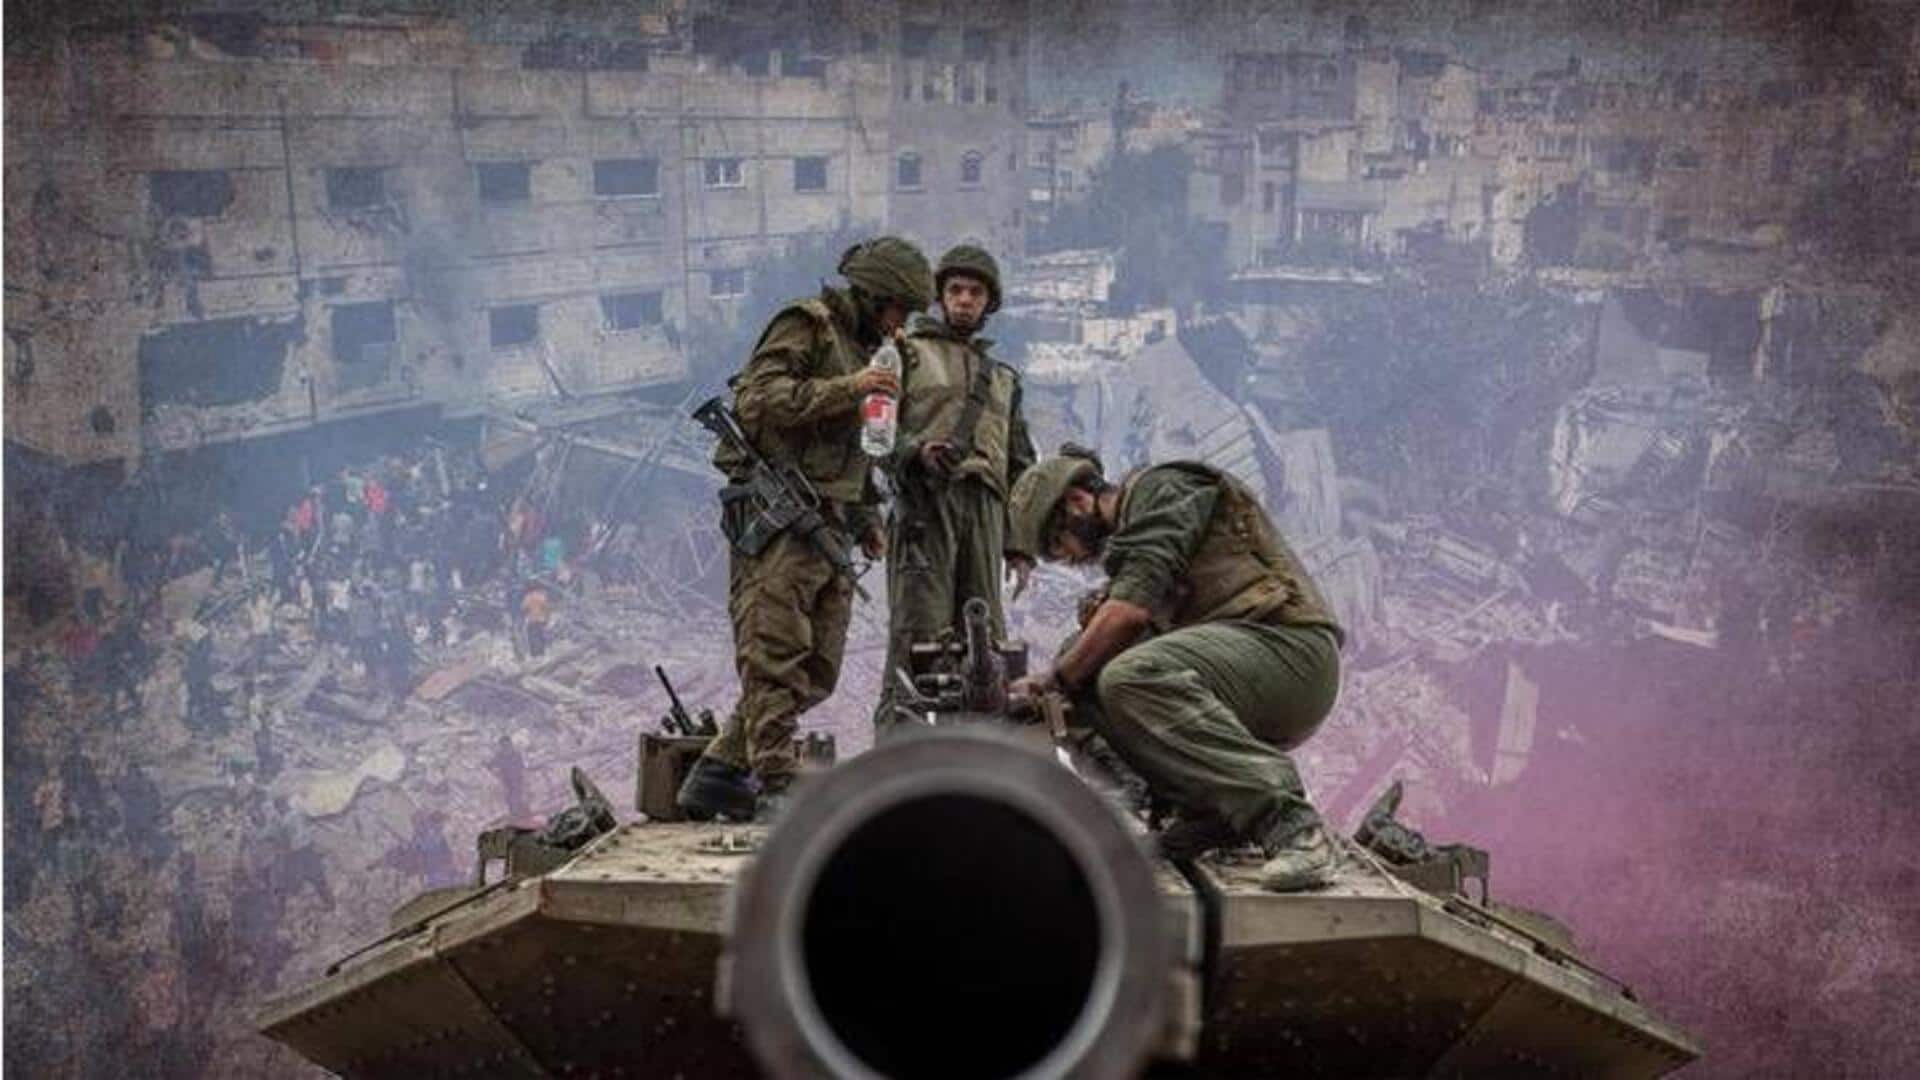 Israel - Hamas war: ఉత్తర గాజాలో హమాస్ కమాండ్ వ్యవస్థను నాశనం చేసిన ఇజ్రాయెల్ సైన్యం